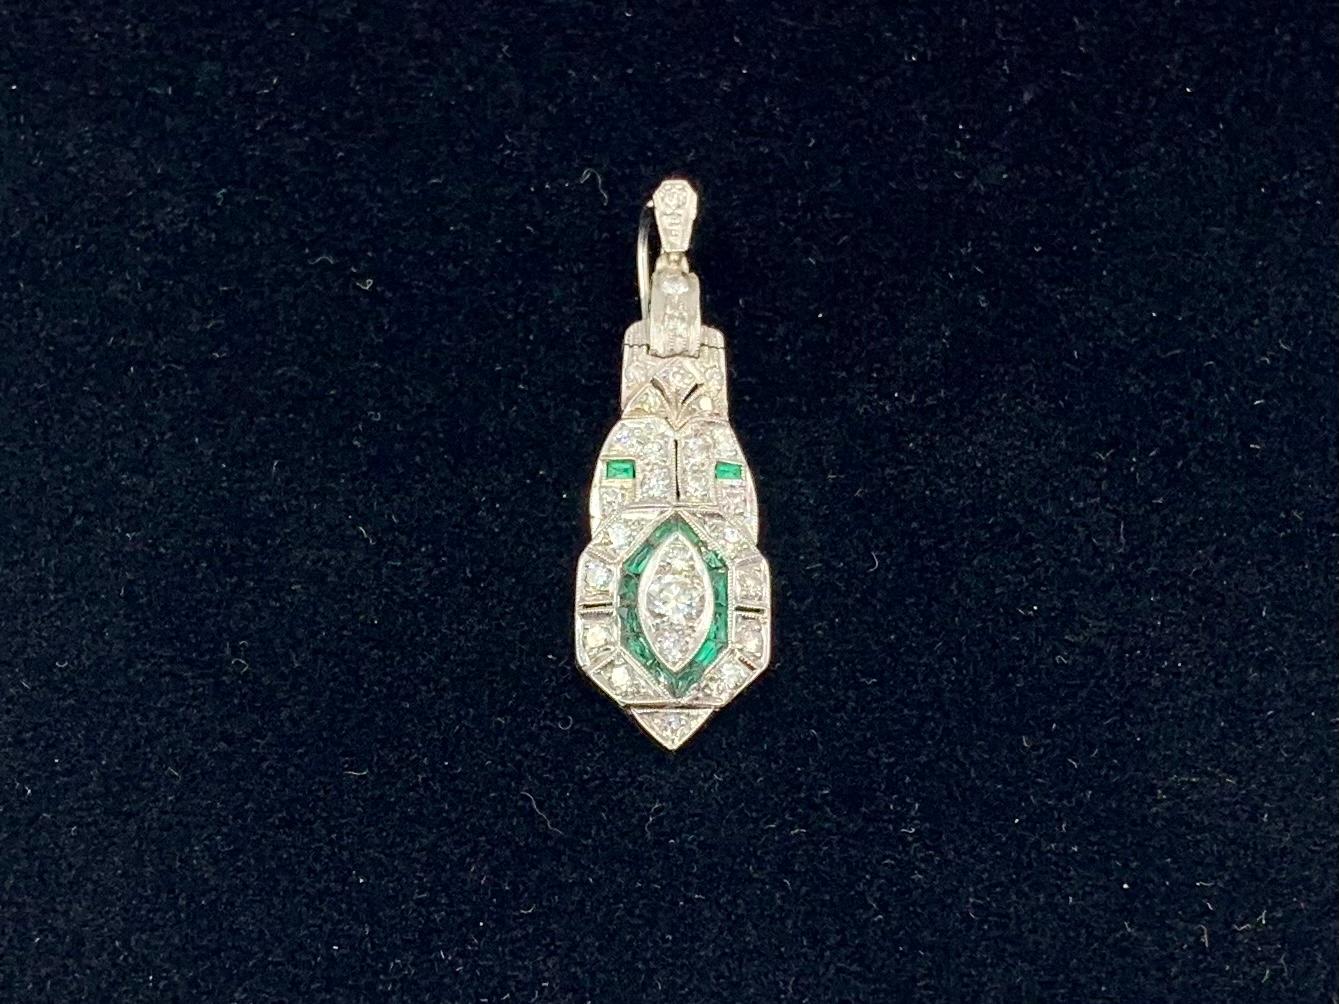 Intéressant et distinctif pendentif en platine, diamants et émeraudes d'époque Art déco avec un motif central d'un œil de diamant encadré d'émeraudes. La généreuse balle présente une caractéristique inhabituelle d'ouverture et de fermeture qui